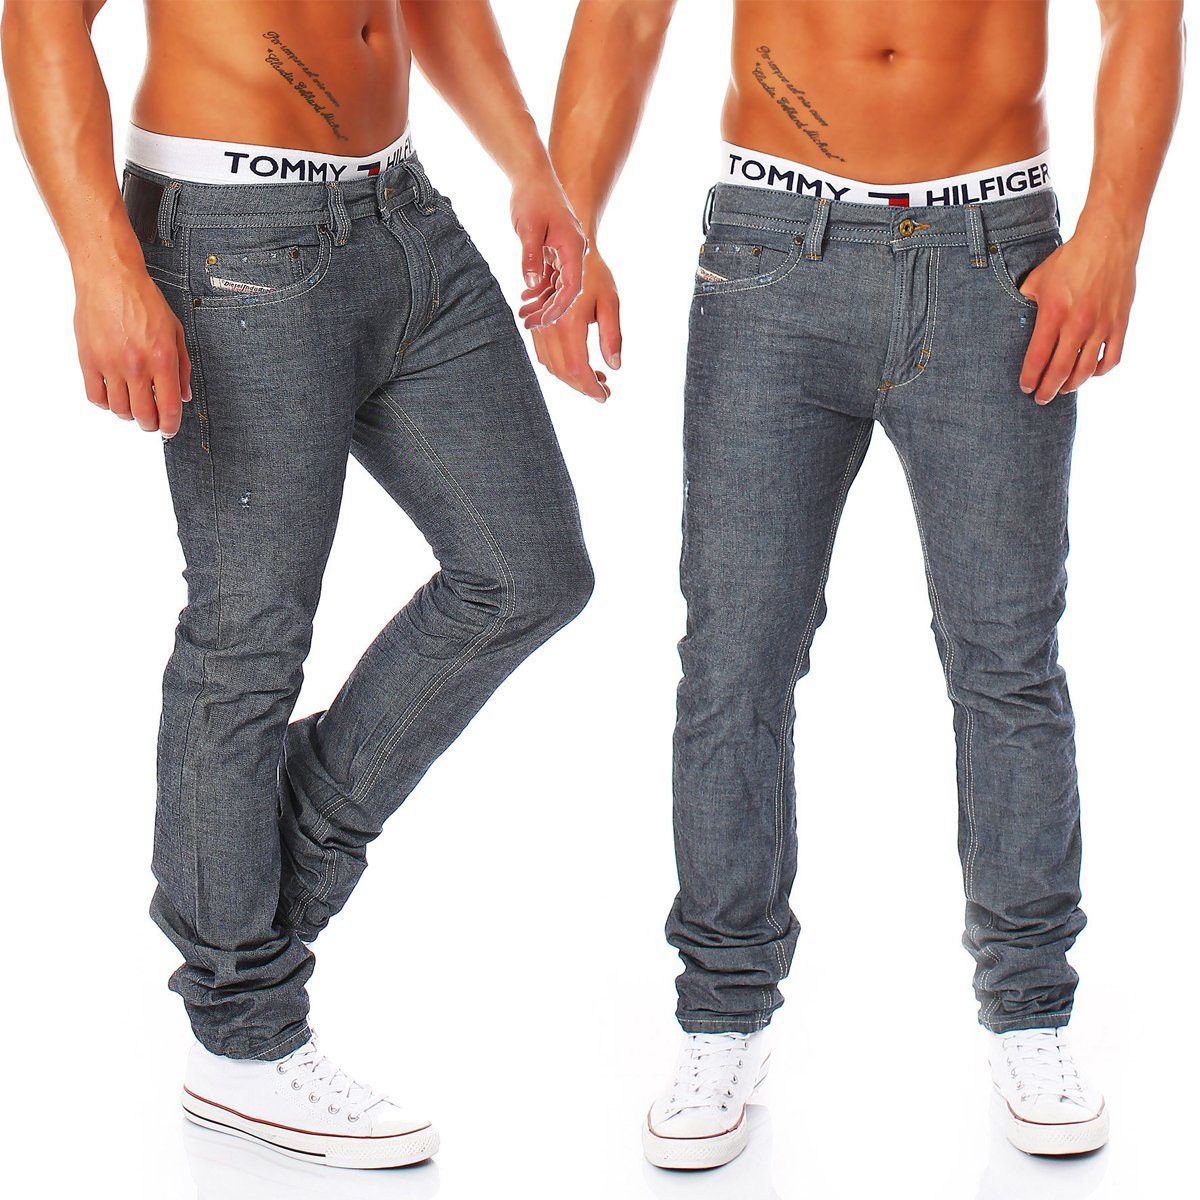 Diesel Slim-fit-Jeans Style, Thavar Dezenter Röhrenjeans, Blau-Grau, 5 Pocket Herren Used-Look 0809D